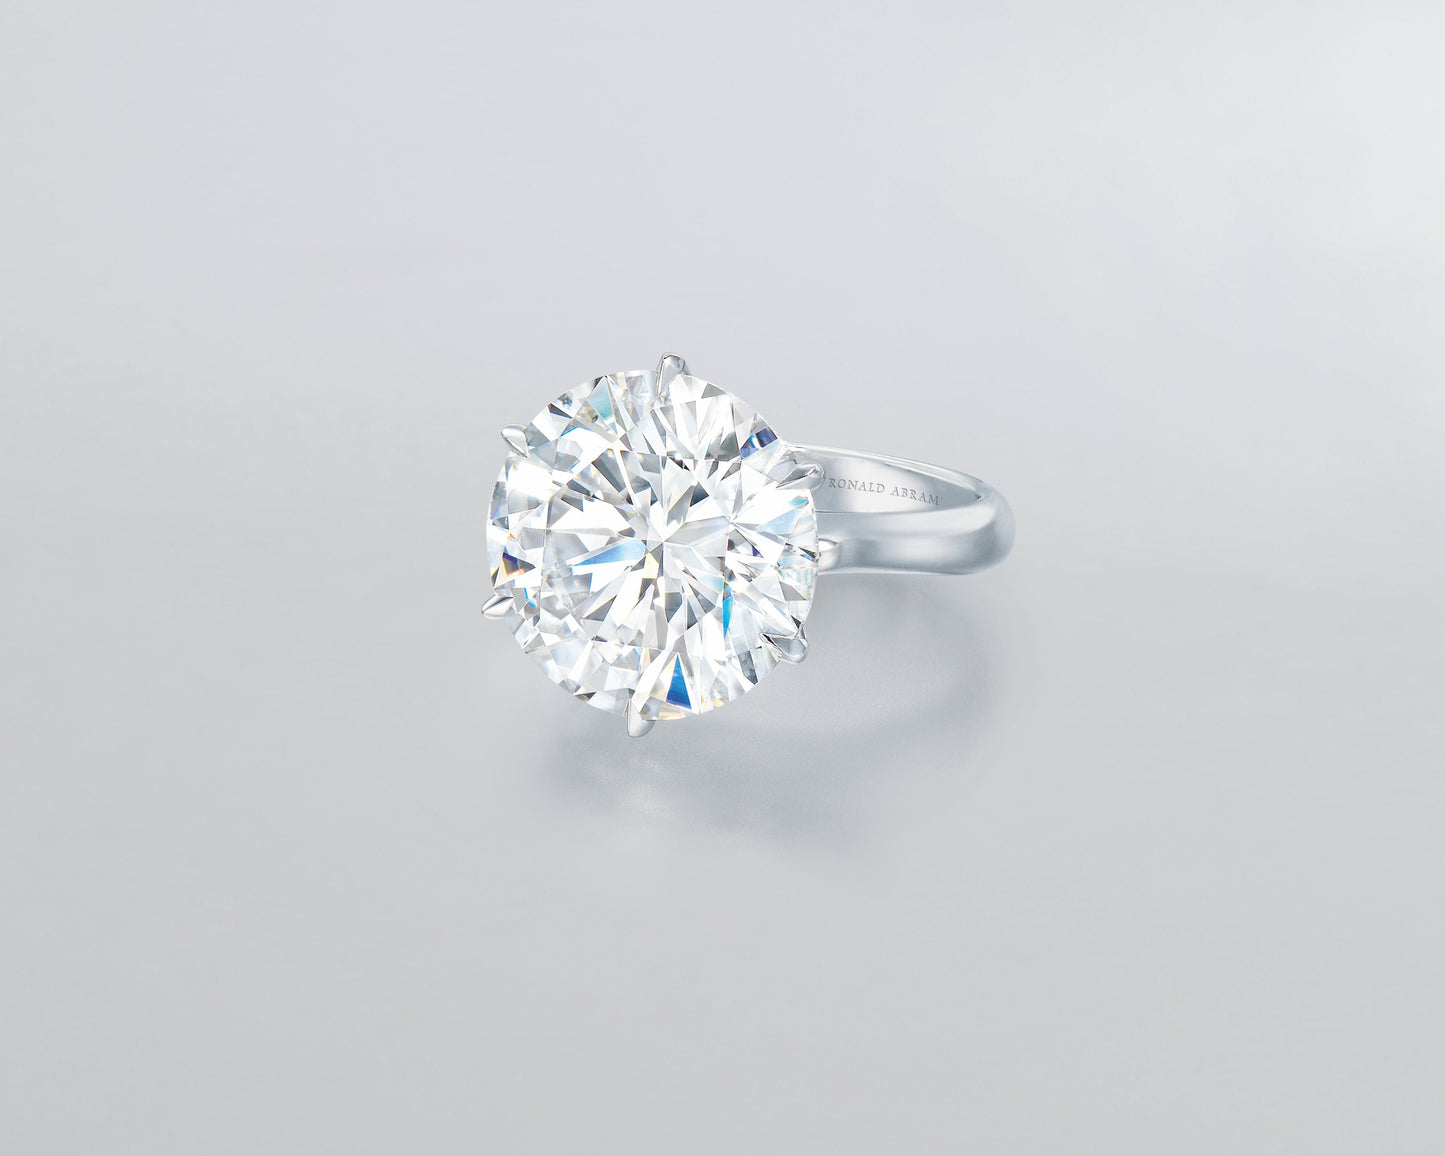 12.65 carat Round Brilliant Diamond Ring